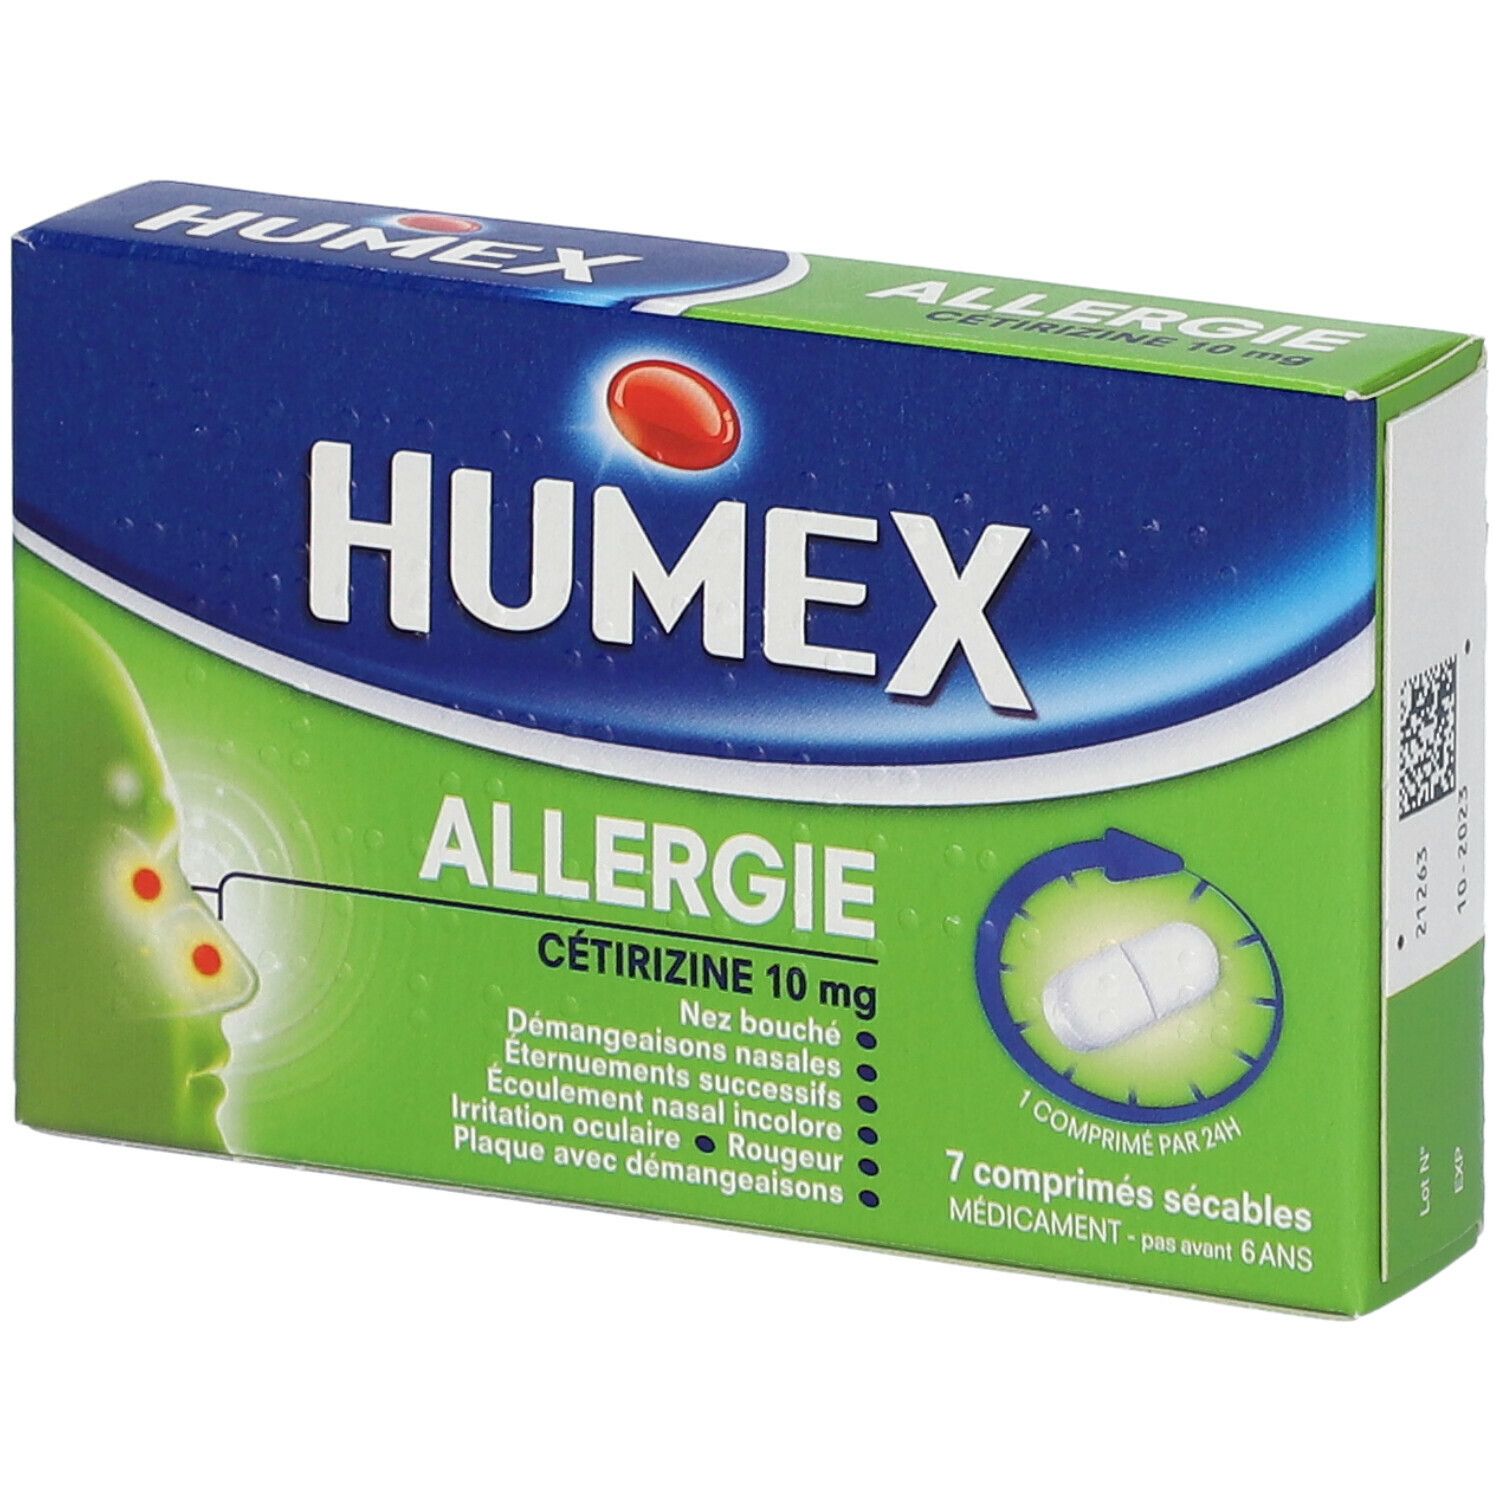 Humex Allergie Cétrizine 10 mg